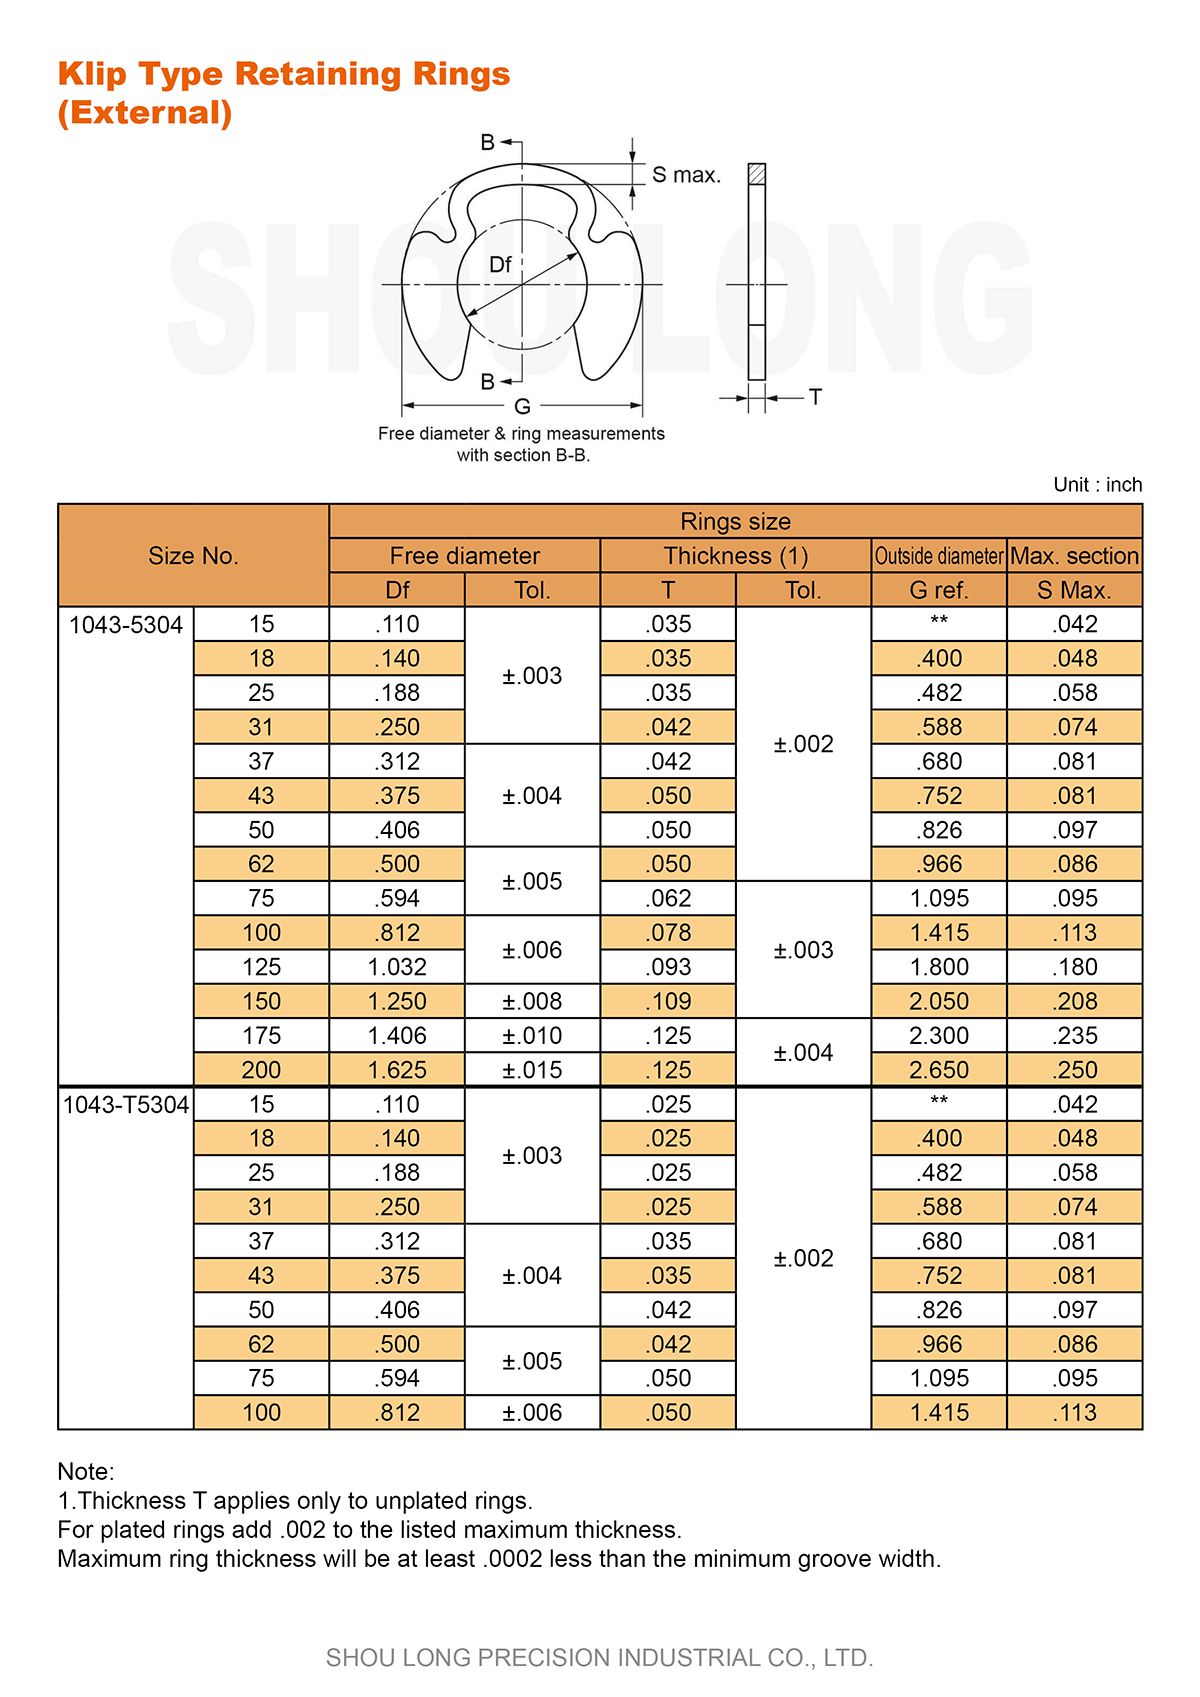 Spec of Inch Klip Type Retaining Rings for Shaft - 1